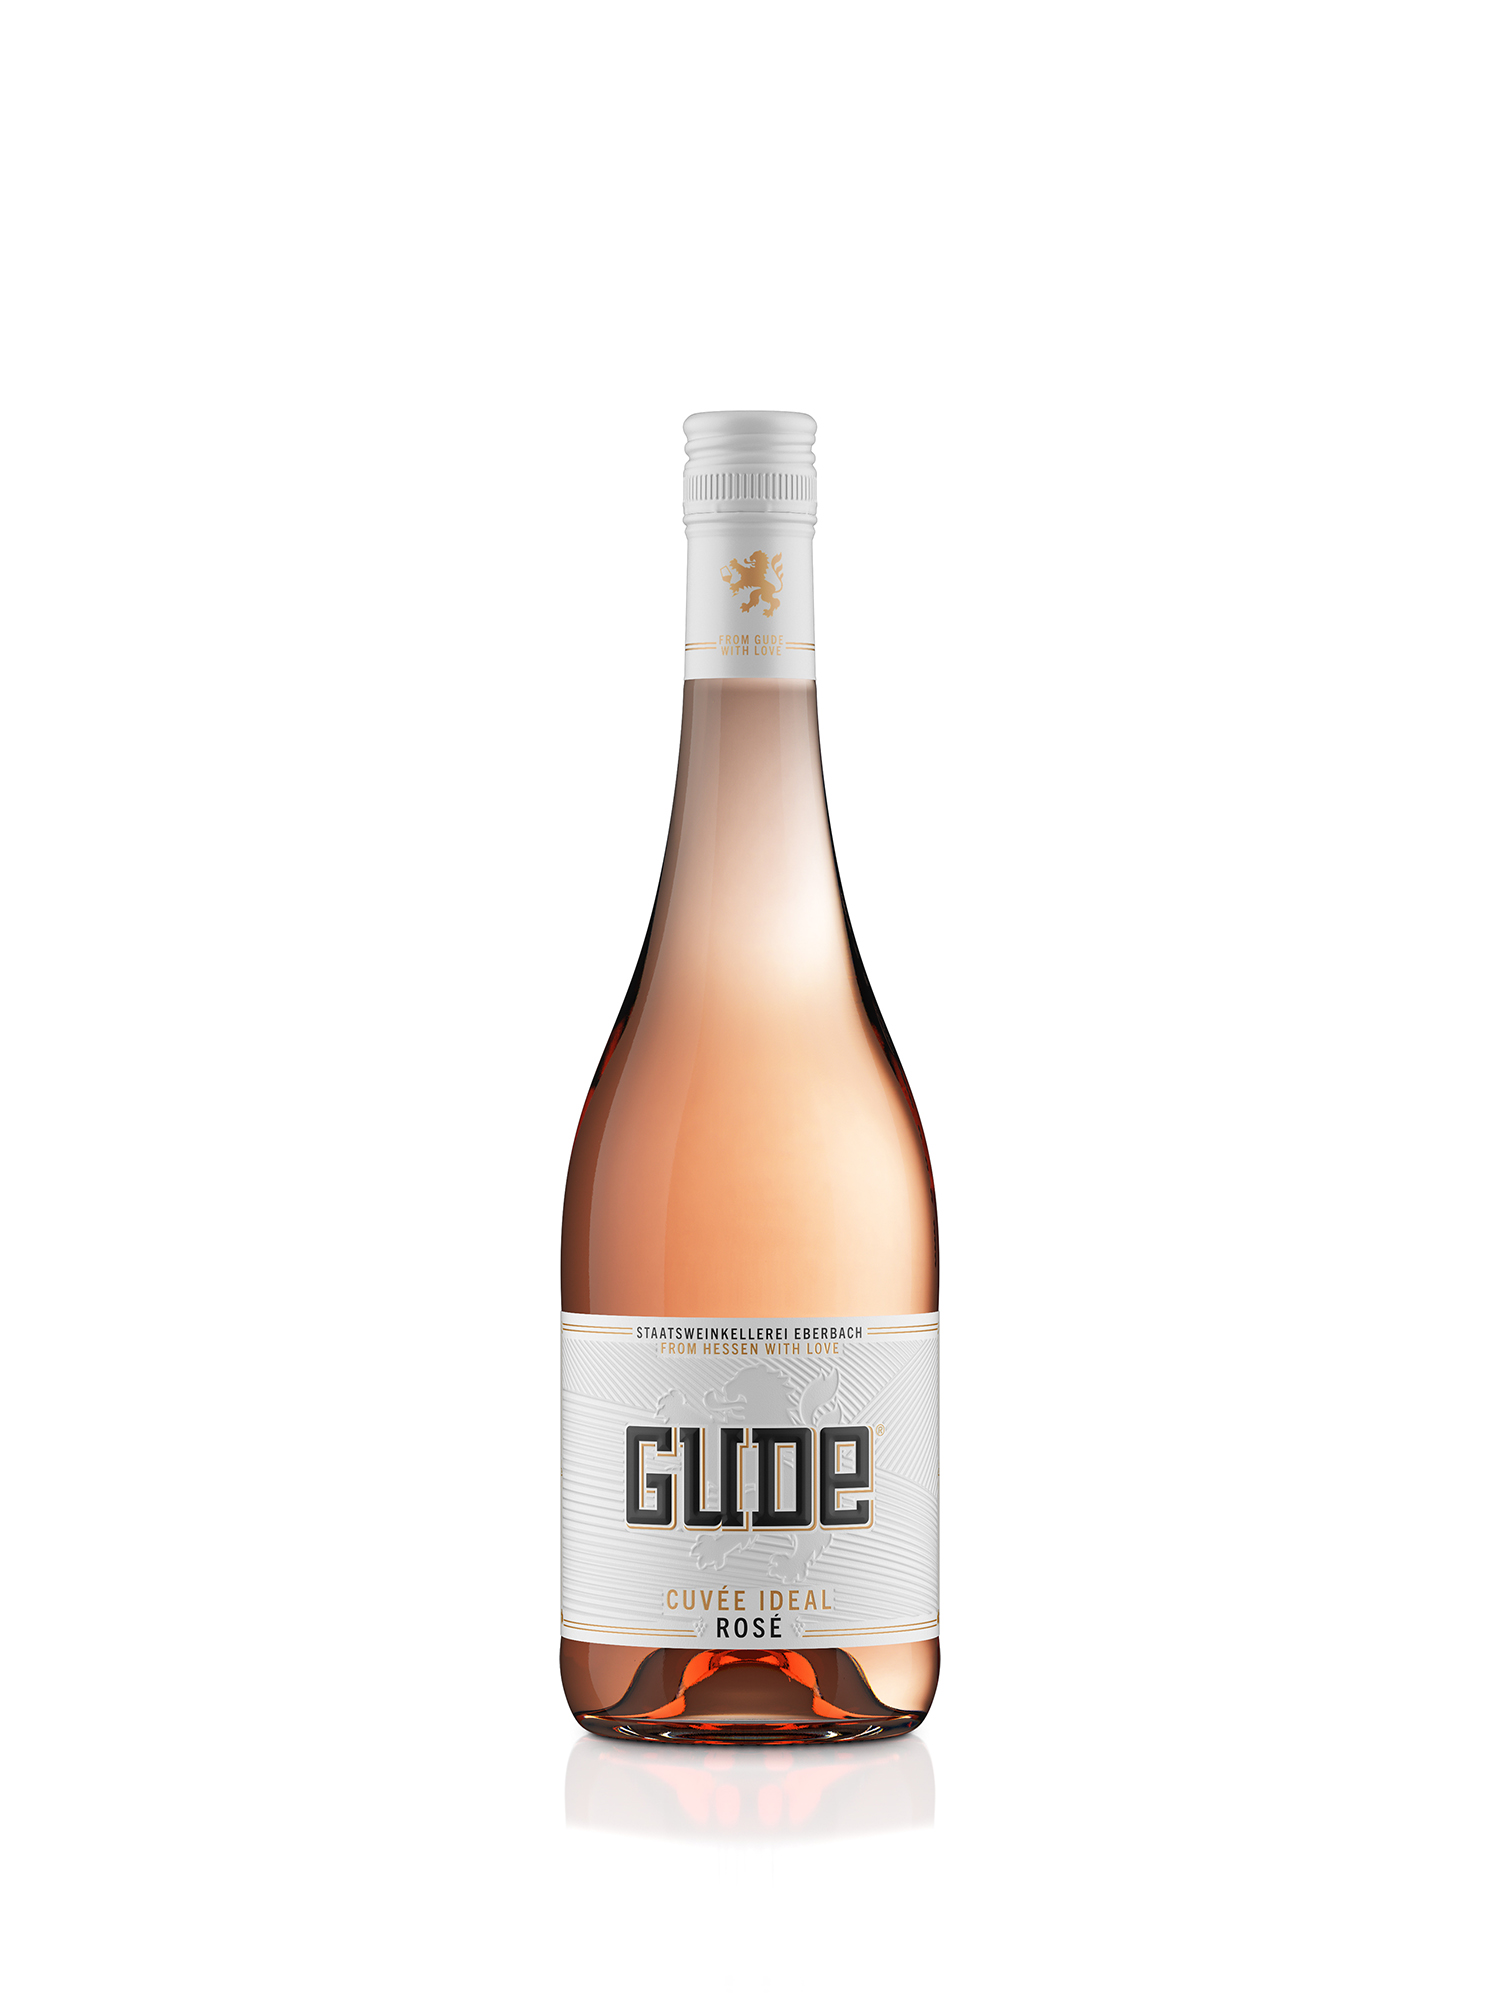 2021 GUDE Cuvée Ideal Rosé 